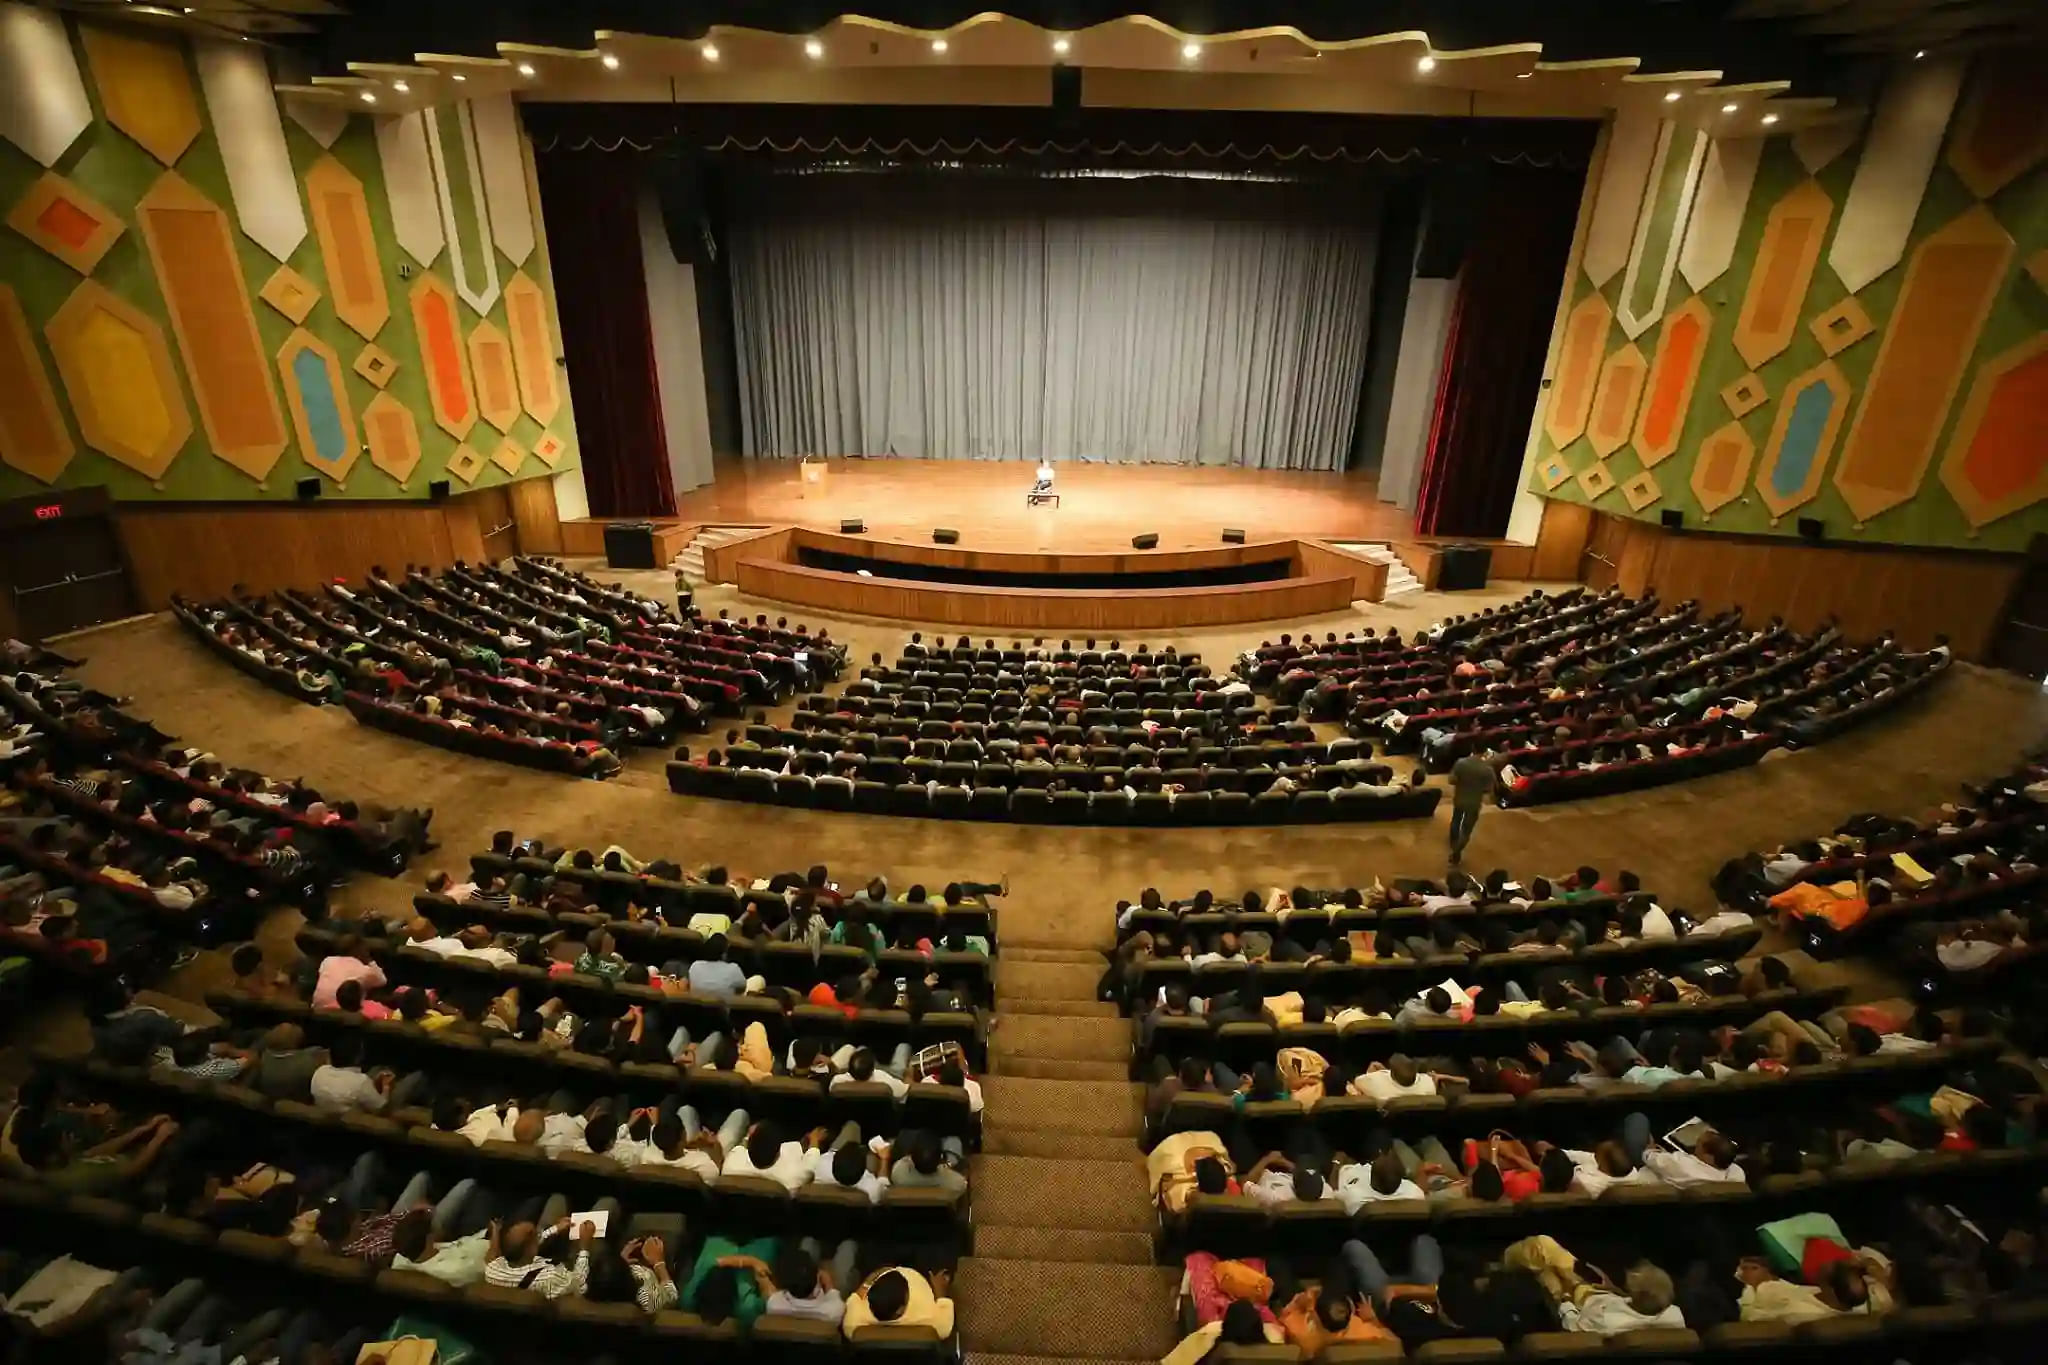 BITS Hyderabad Auditorium